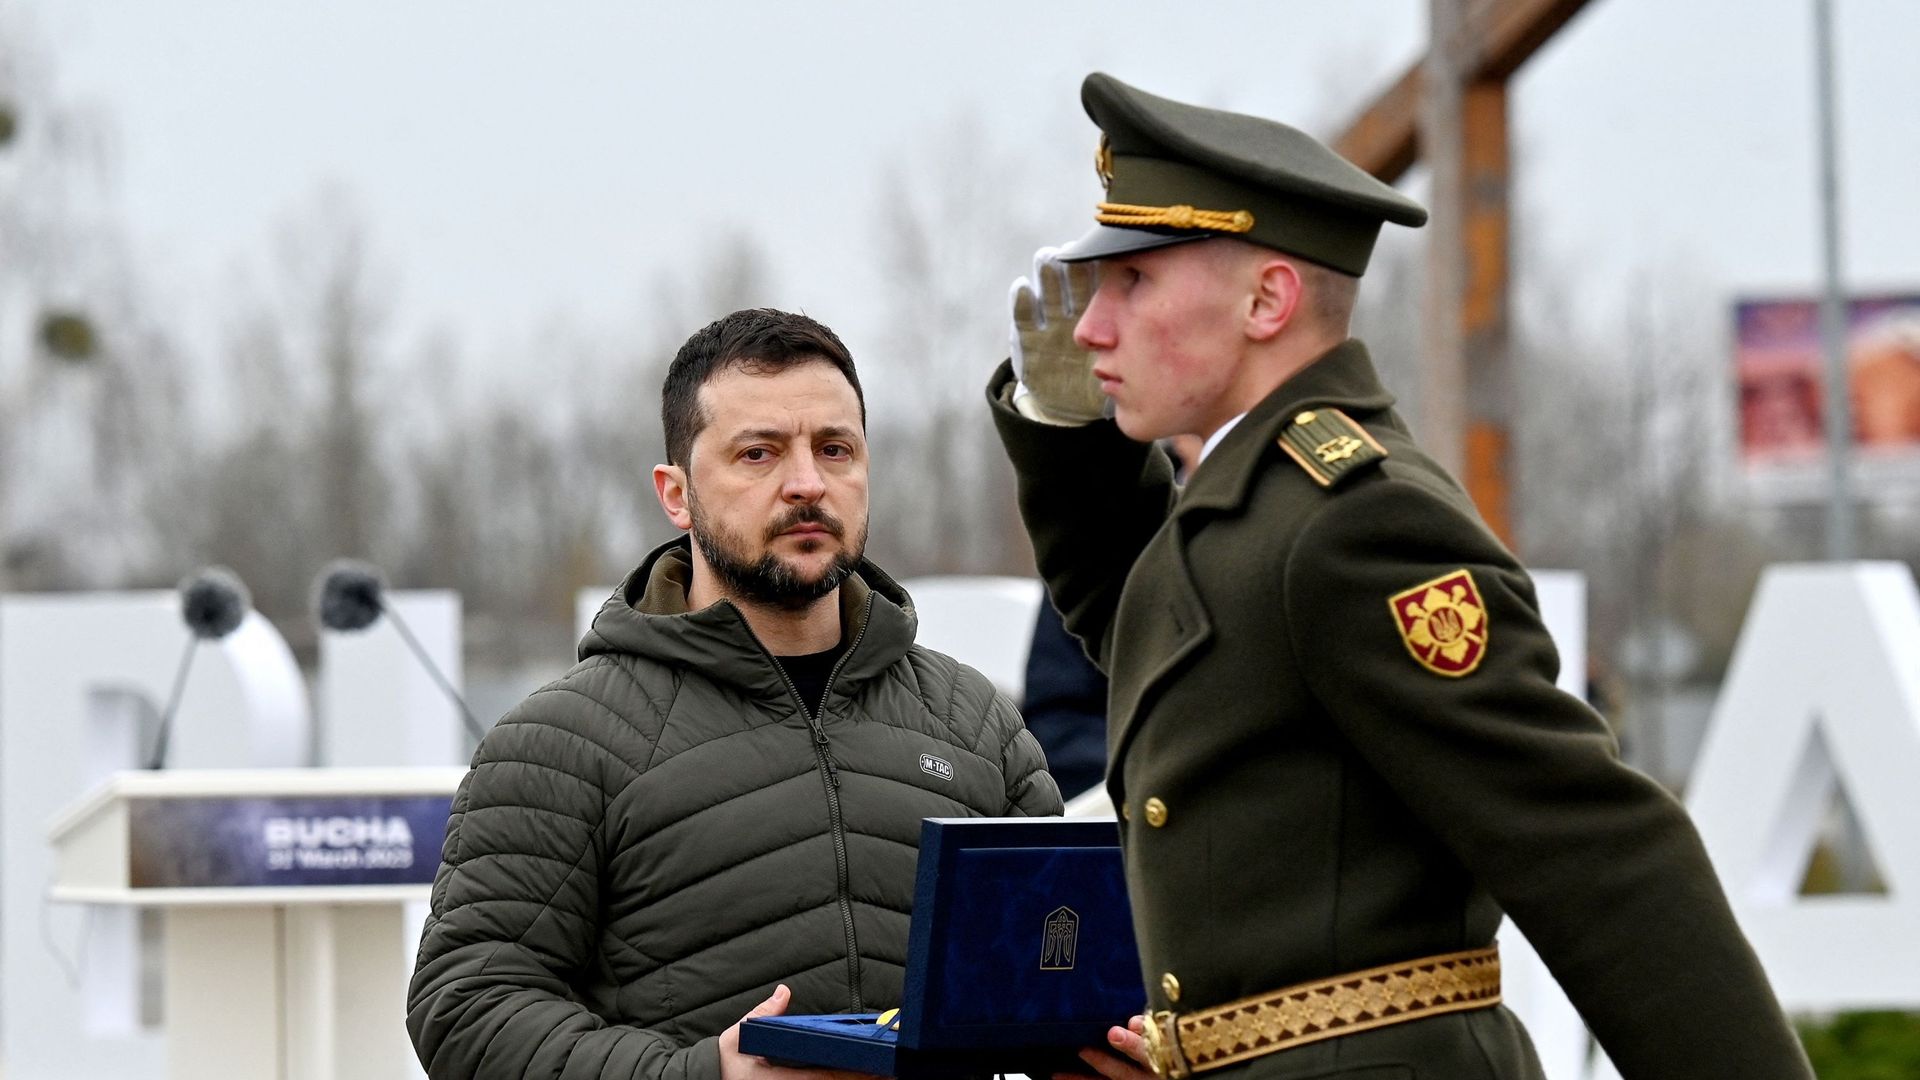 Le président ukrainien Volodymyr Zelensky tient une récompense lors d'une cérémonie marquant le premier anniversaire du retrait des troupes russes de la ville ukrainienne de Boutcha, le 31 mars 2023.